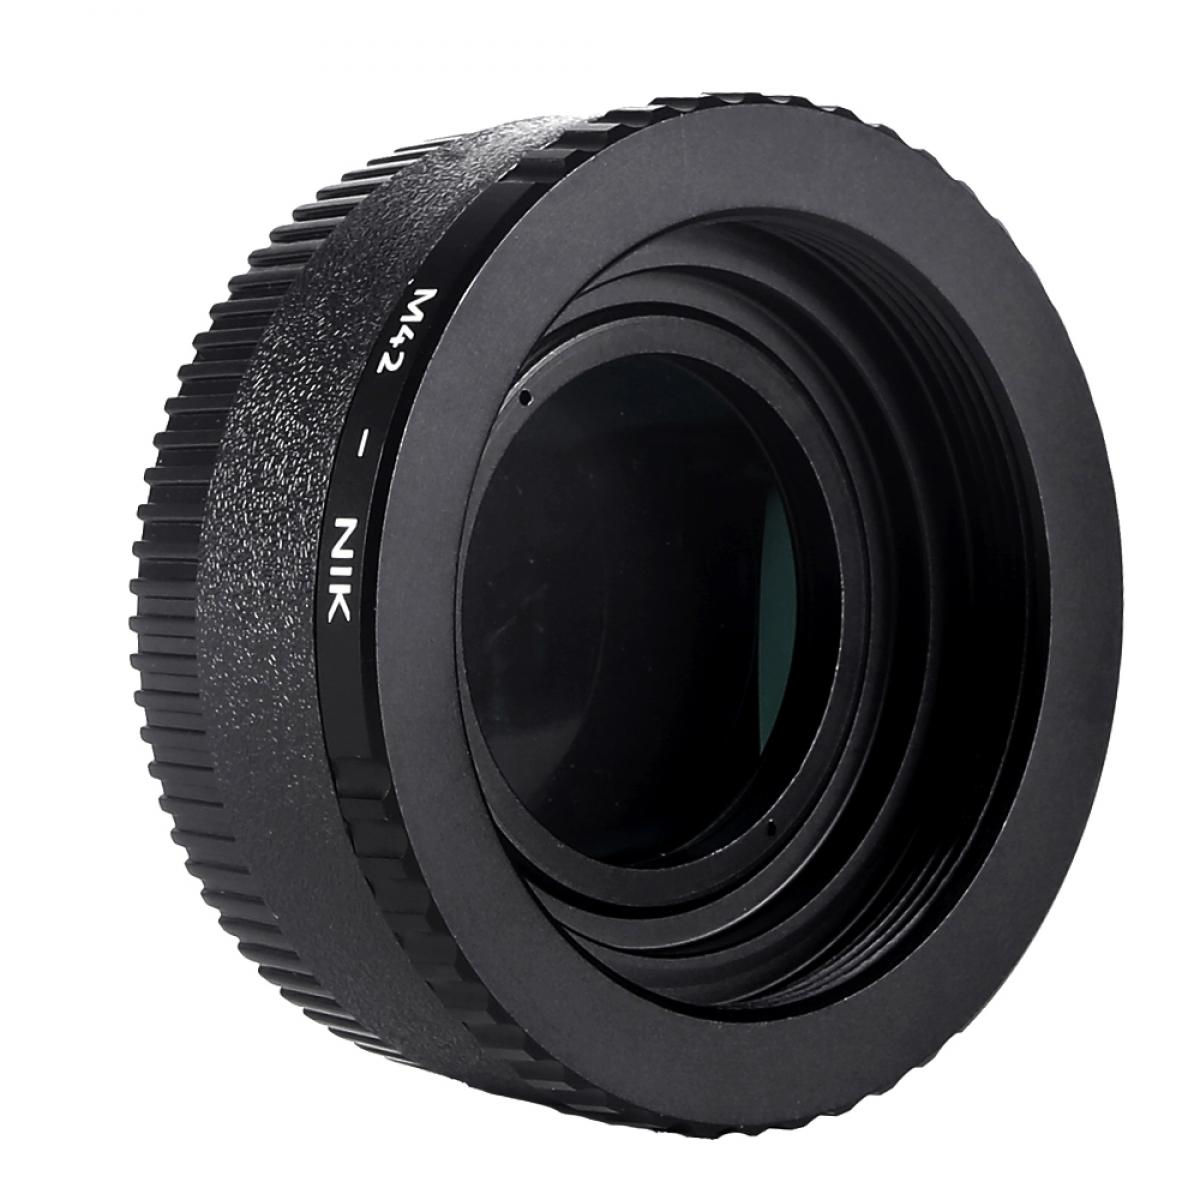 K&F Concept M10171 Bague Adaptation Objectif M42 vers Nikon F Mount Appareil Photo avec Verres Optiques